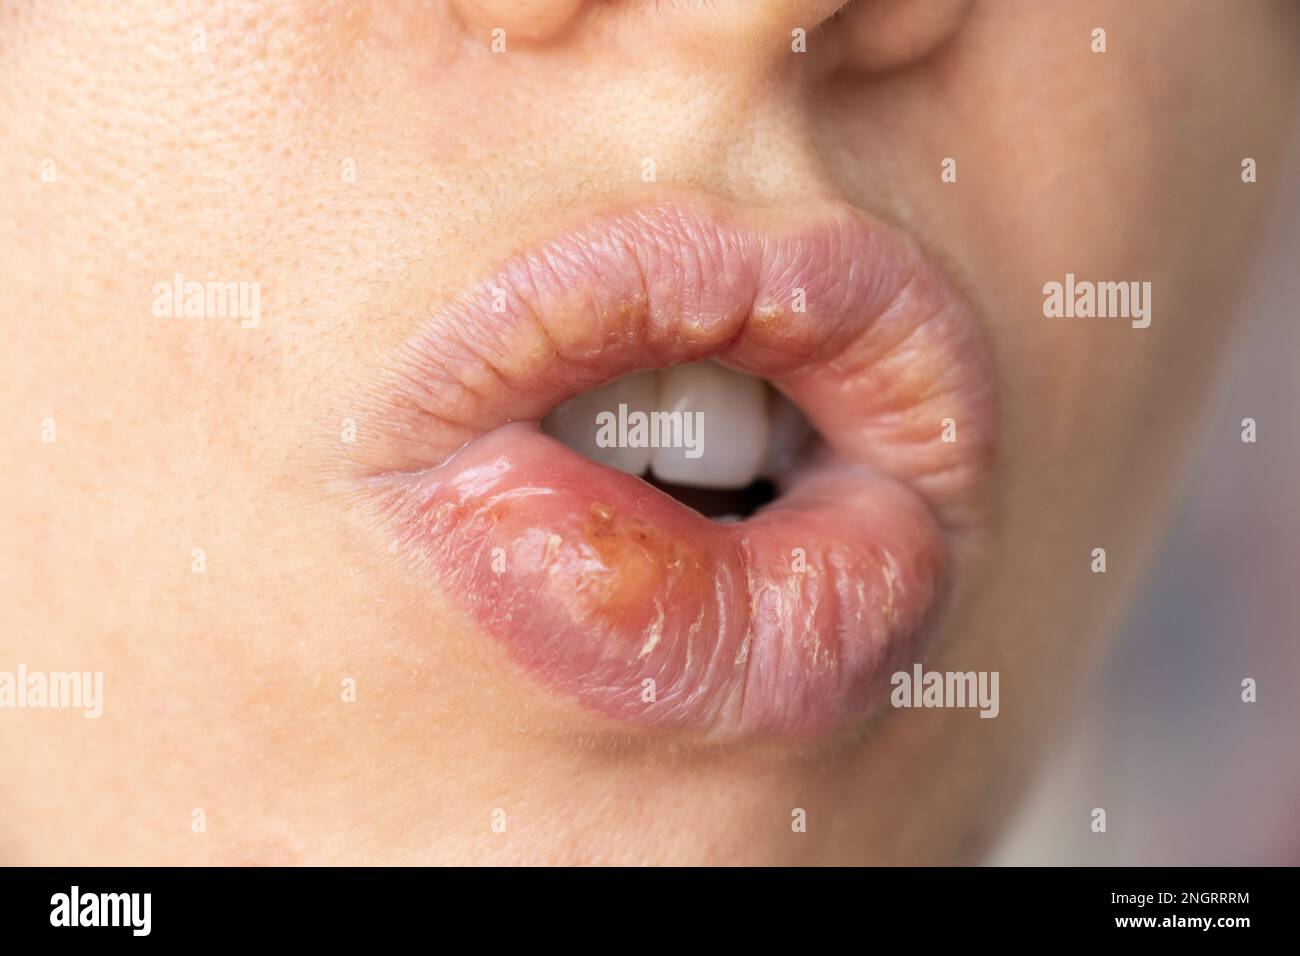 Herpes simplex sulle labbra di una ragazza primo piano, un gruppo di malattie virali con una eruzione caratteristica di vescicole raggruppate sul labbro Foto Stock